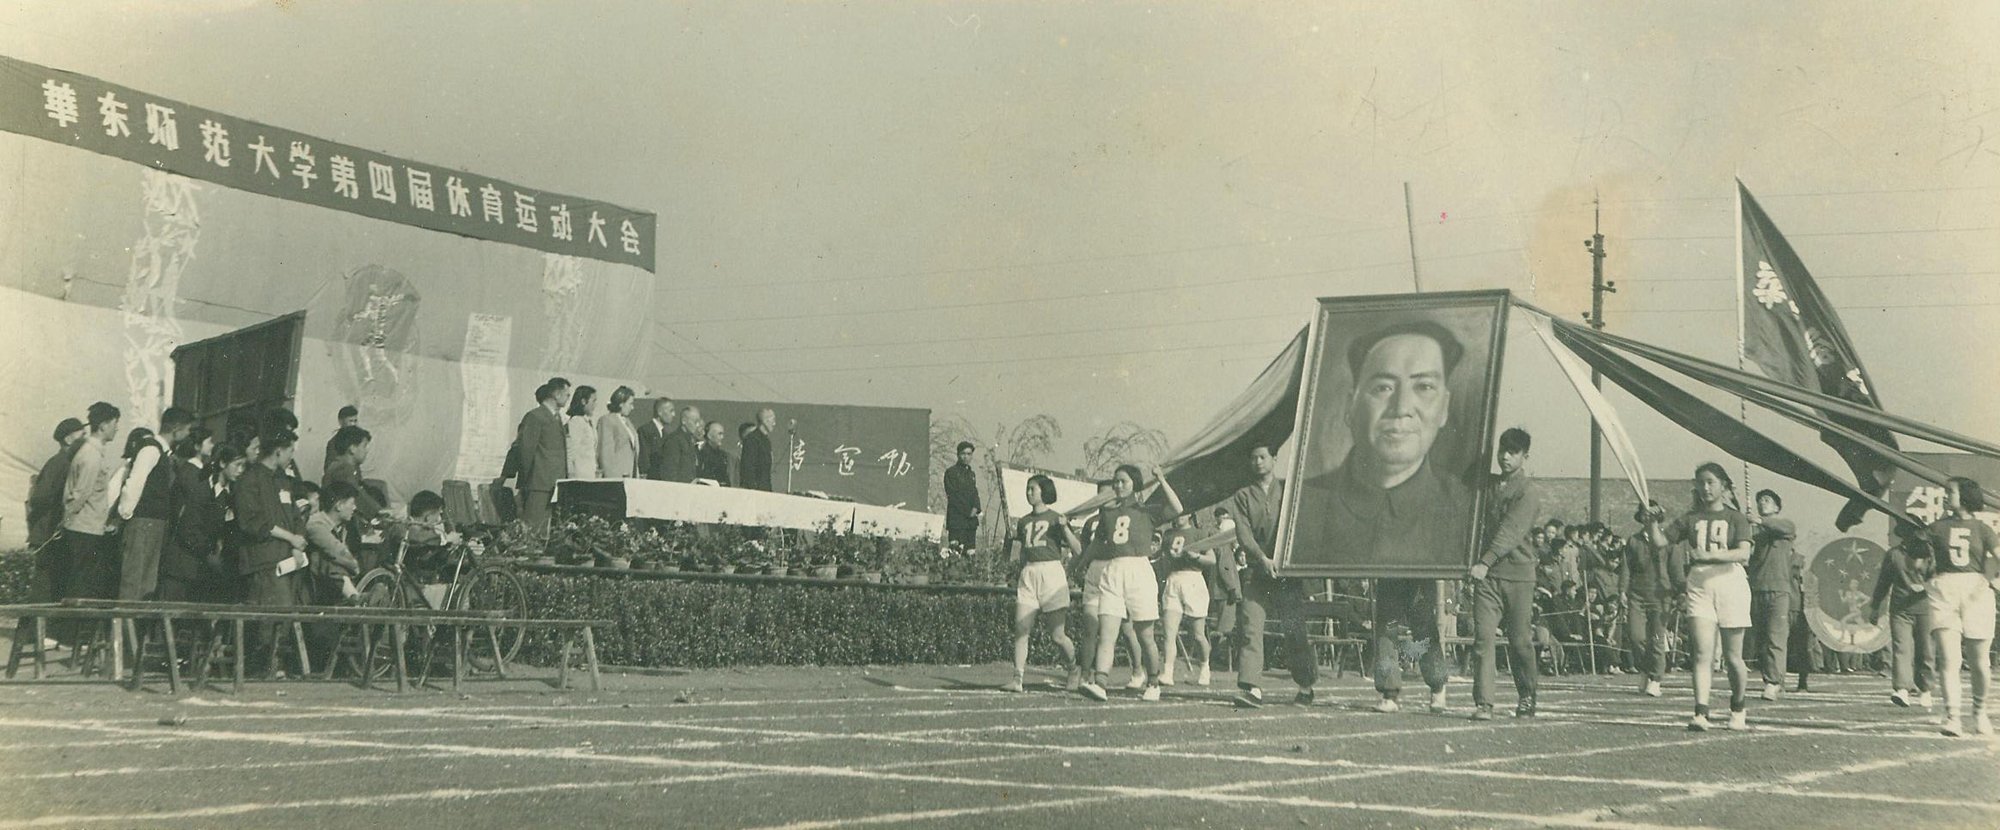 1956年4月, 华东师范大学第四届体育运动大会